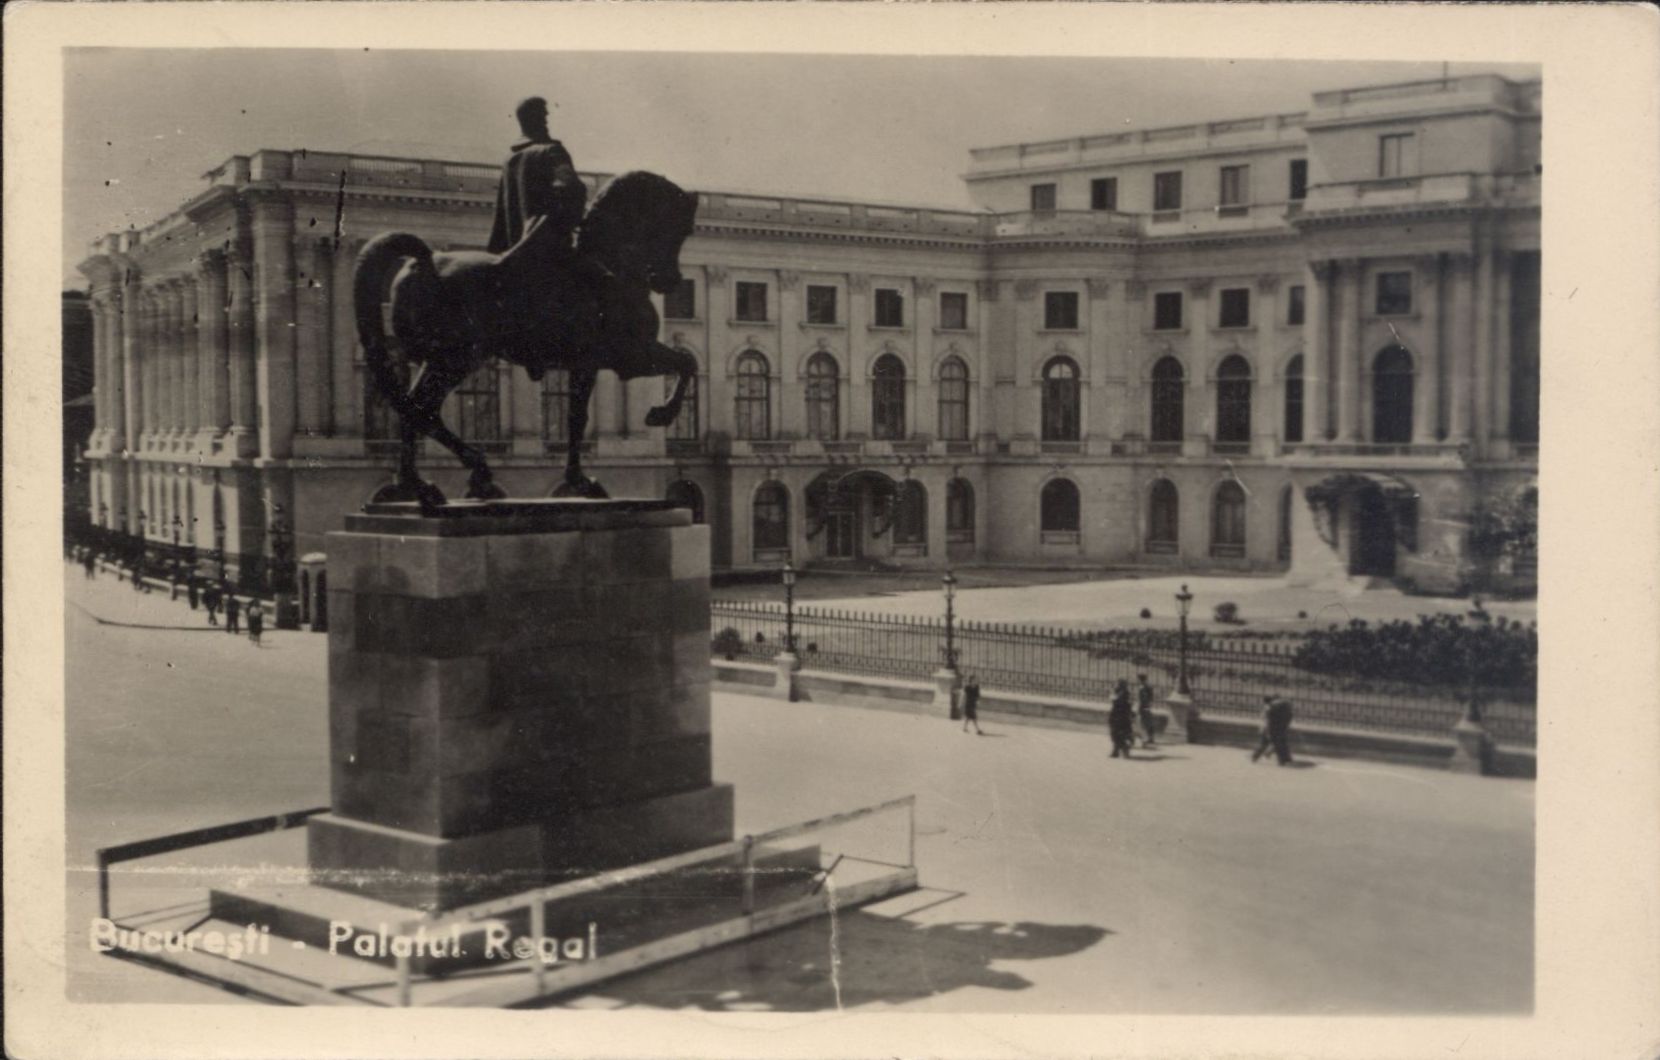 Statuia originală a Regelui Carol I, realizată în 1939 și distrusă în 1948, de regimul comunist. Astăzi există varianta refăcută și dezvelită în 2010, pe același amplasament, vizavi de Palatul Regal, în fața Bibliotecii Centrale Universitare.